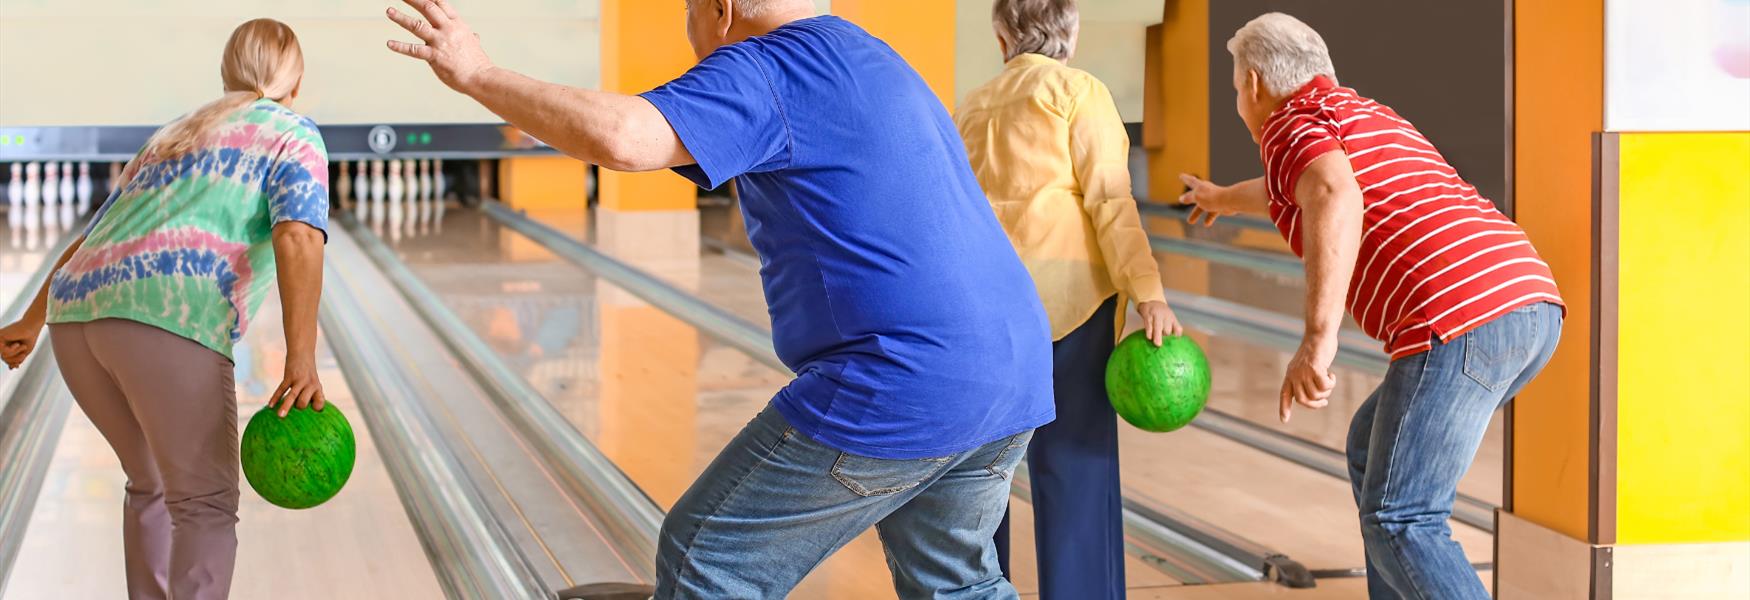 Elderly people playing ten pin bowling